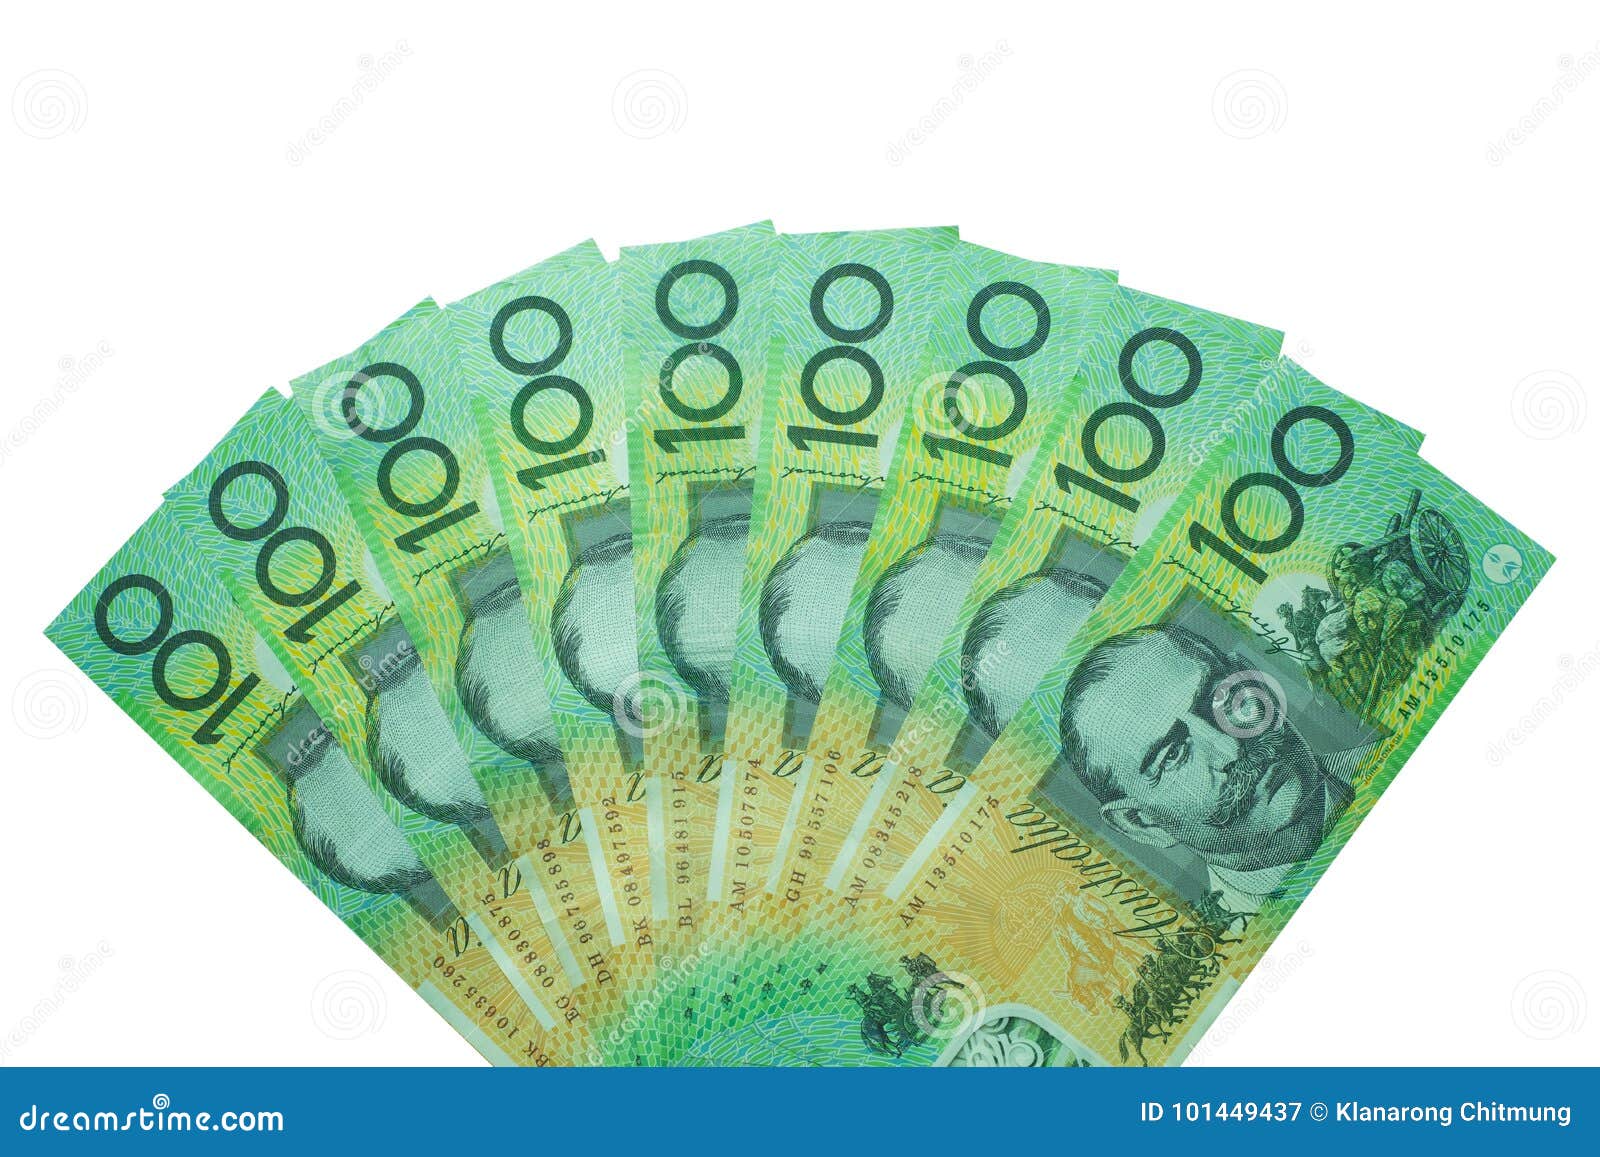 澳洲一百元紙幣貨幣, 貨幣, 百, 澳大利亞PNG去背圖片素材免費下載，免摳圖設計圖案下載 - Pngtree